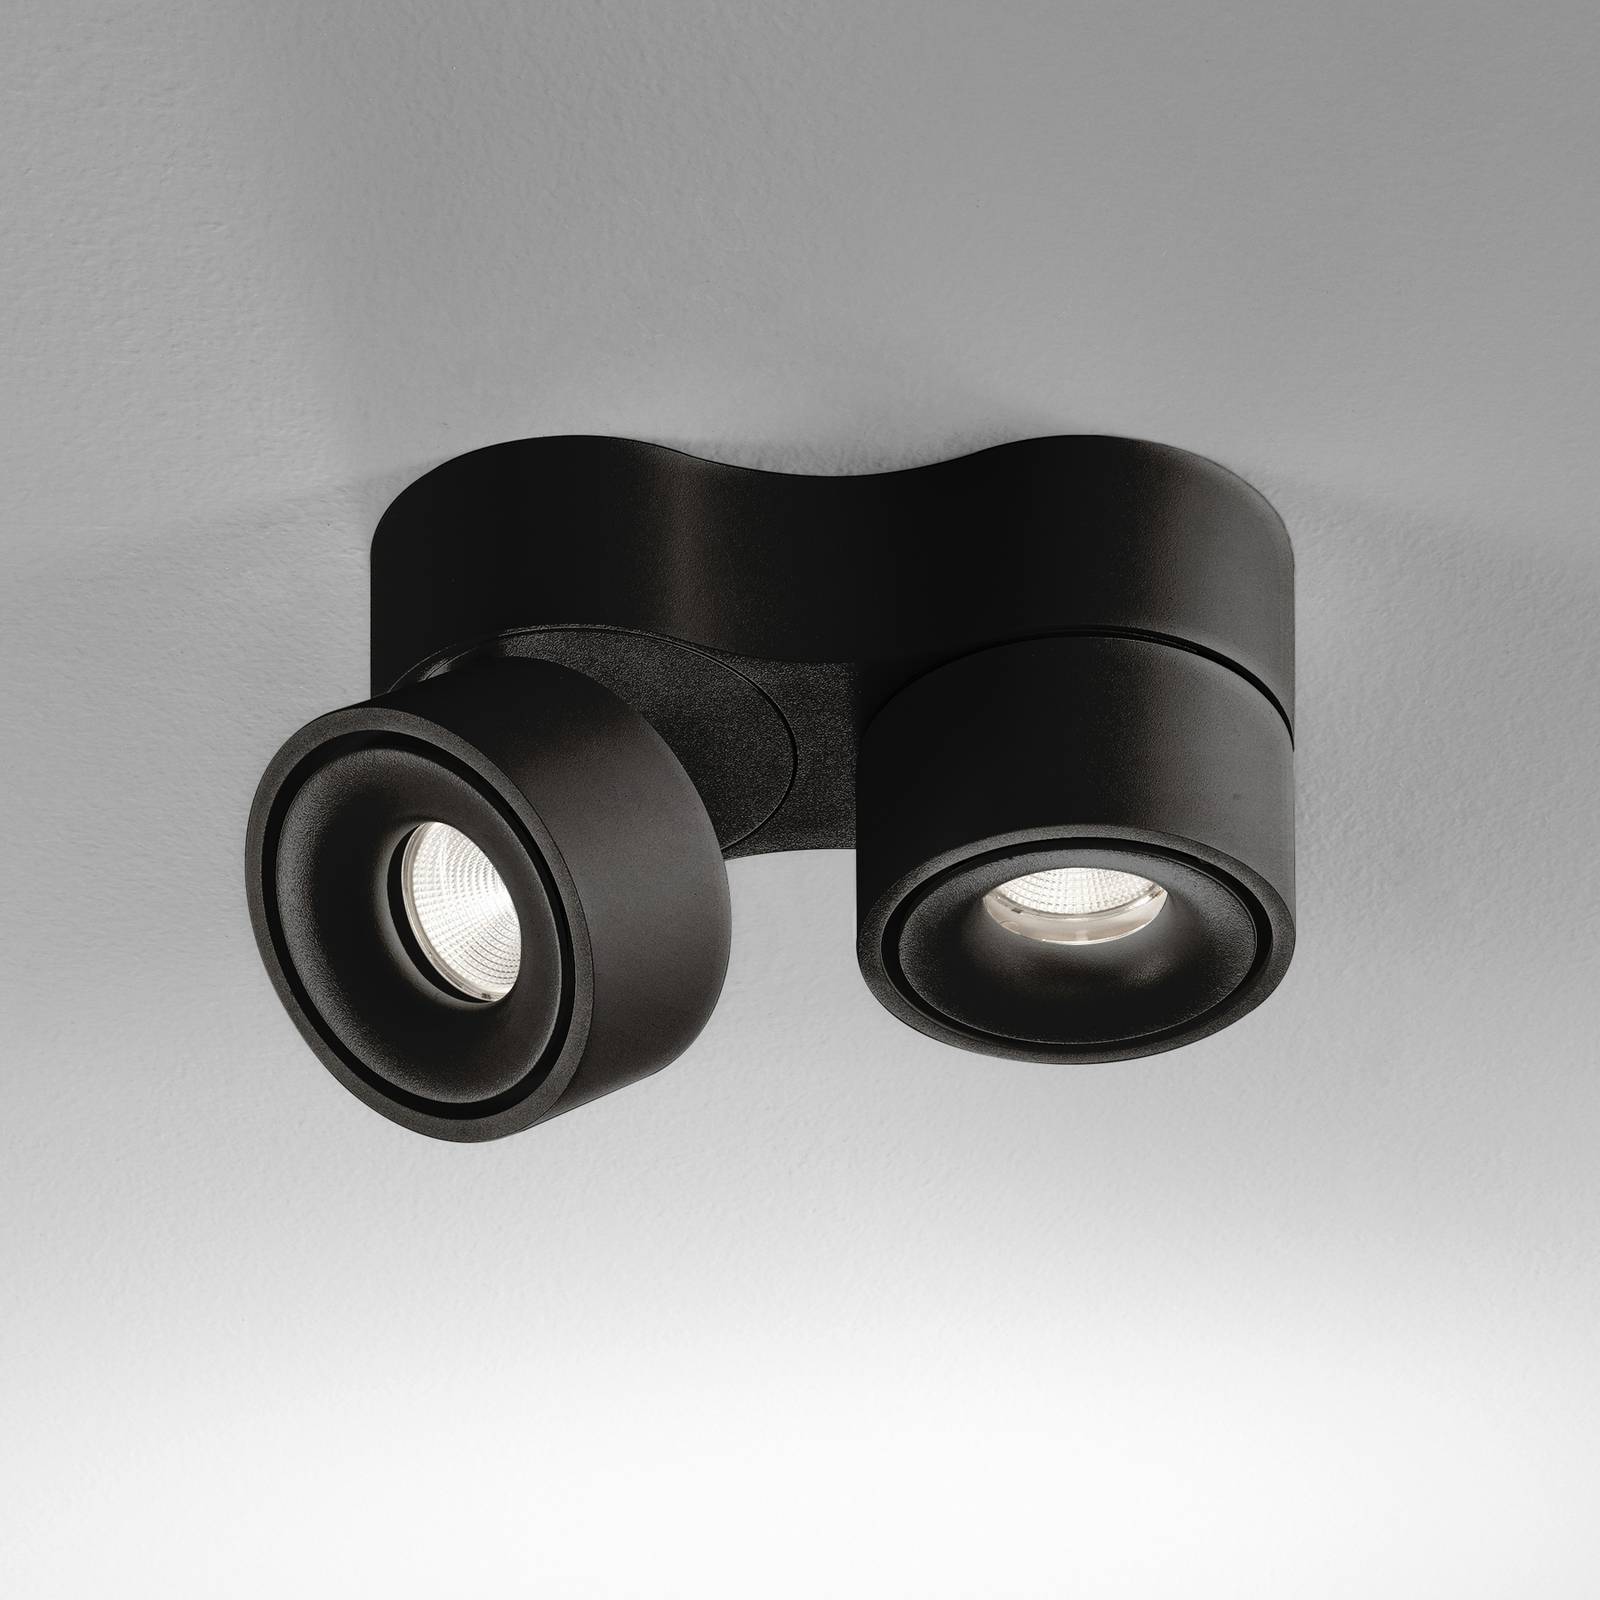 Image of Egger Licht Egger Clippo Duo spot plafond LED, noir, 3 000 K 